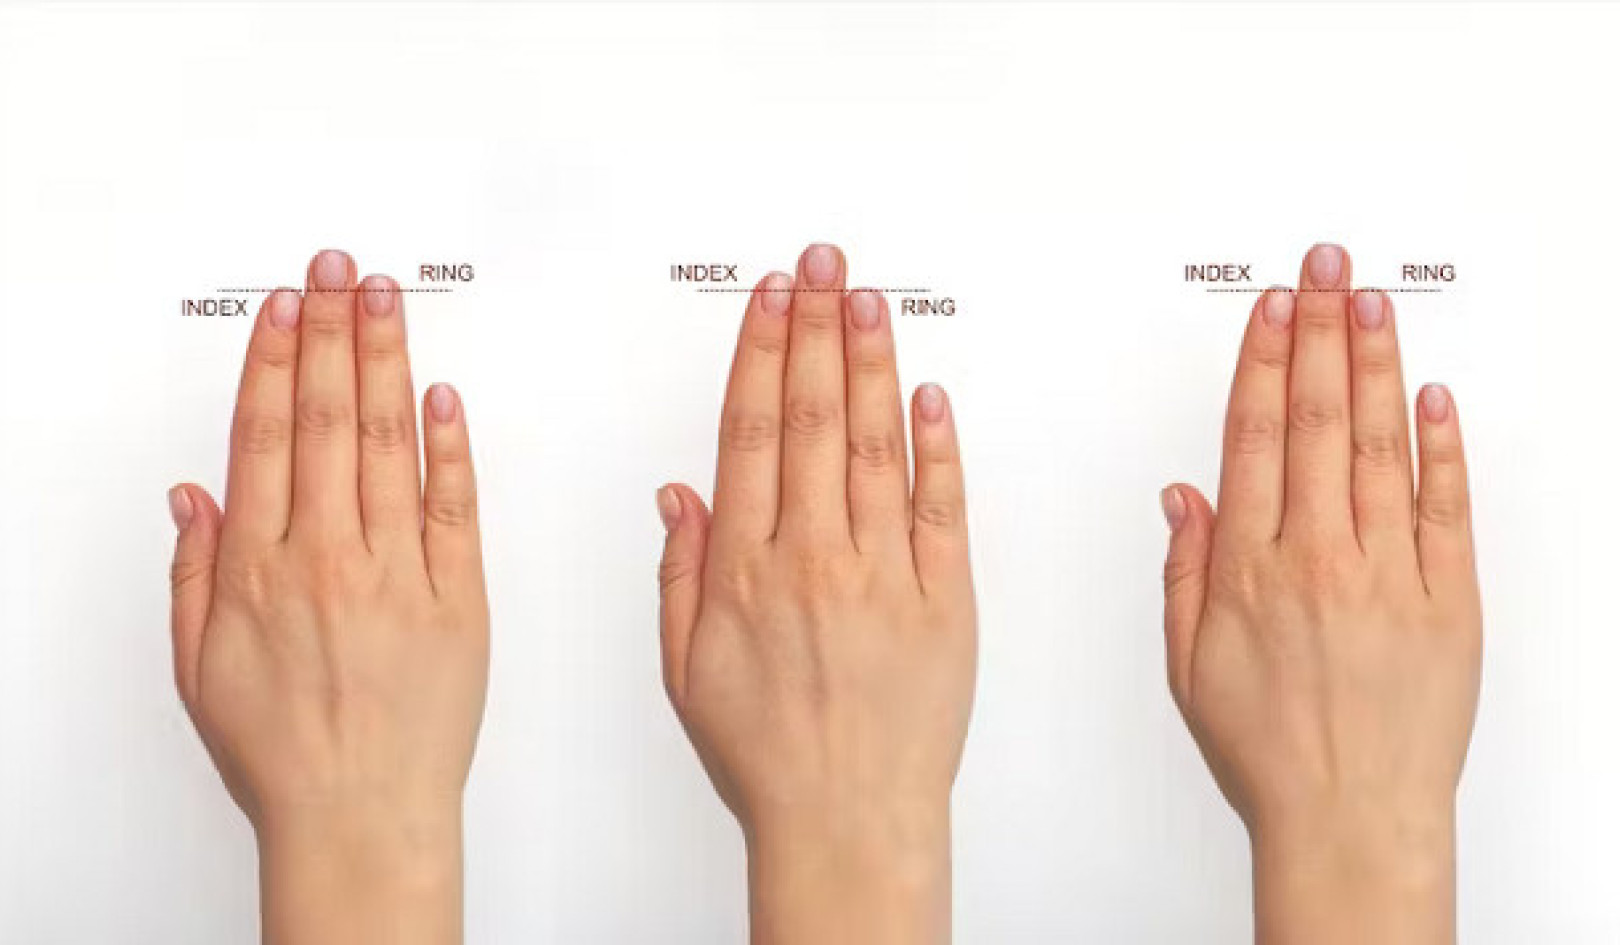 Odblokowywanie sekretów zdrowia poprzez dłonie: od zmian paznokci po długość palców